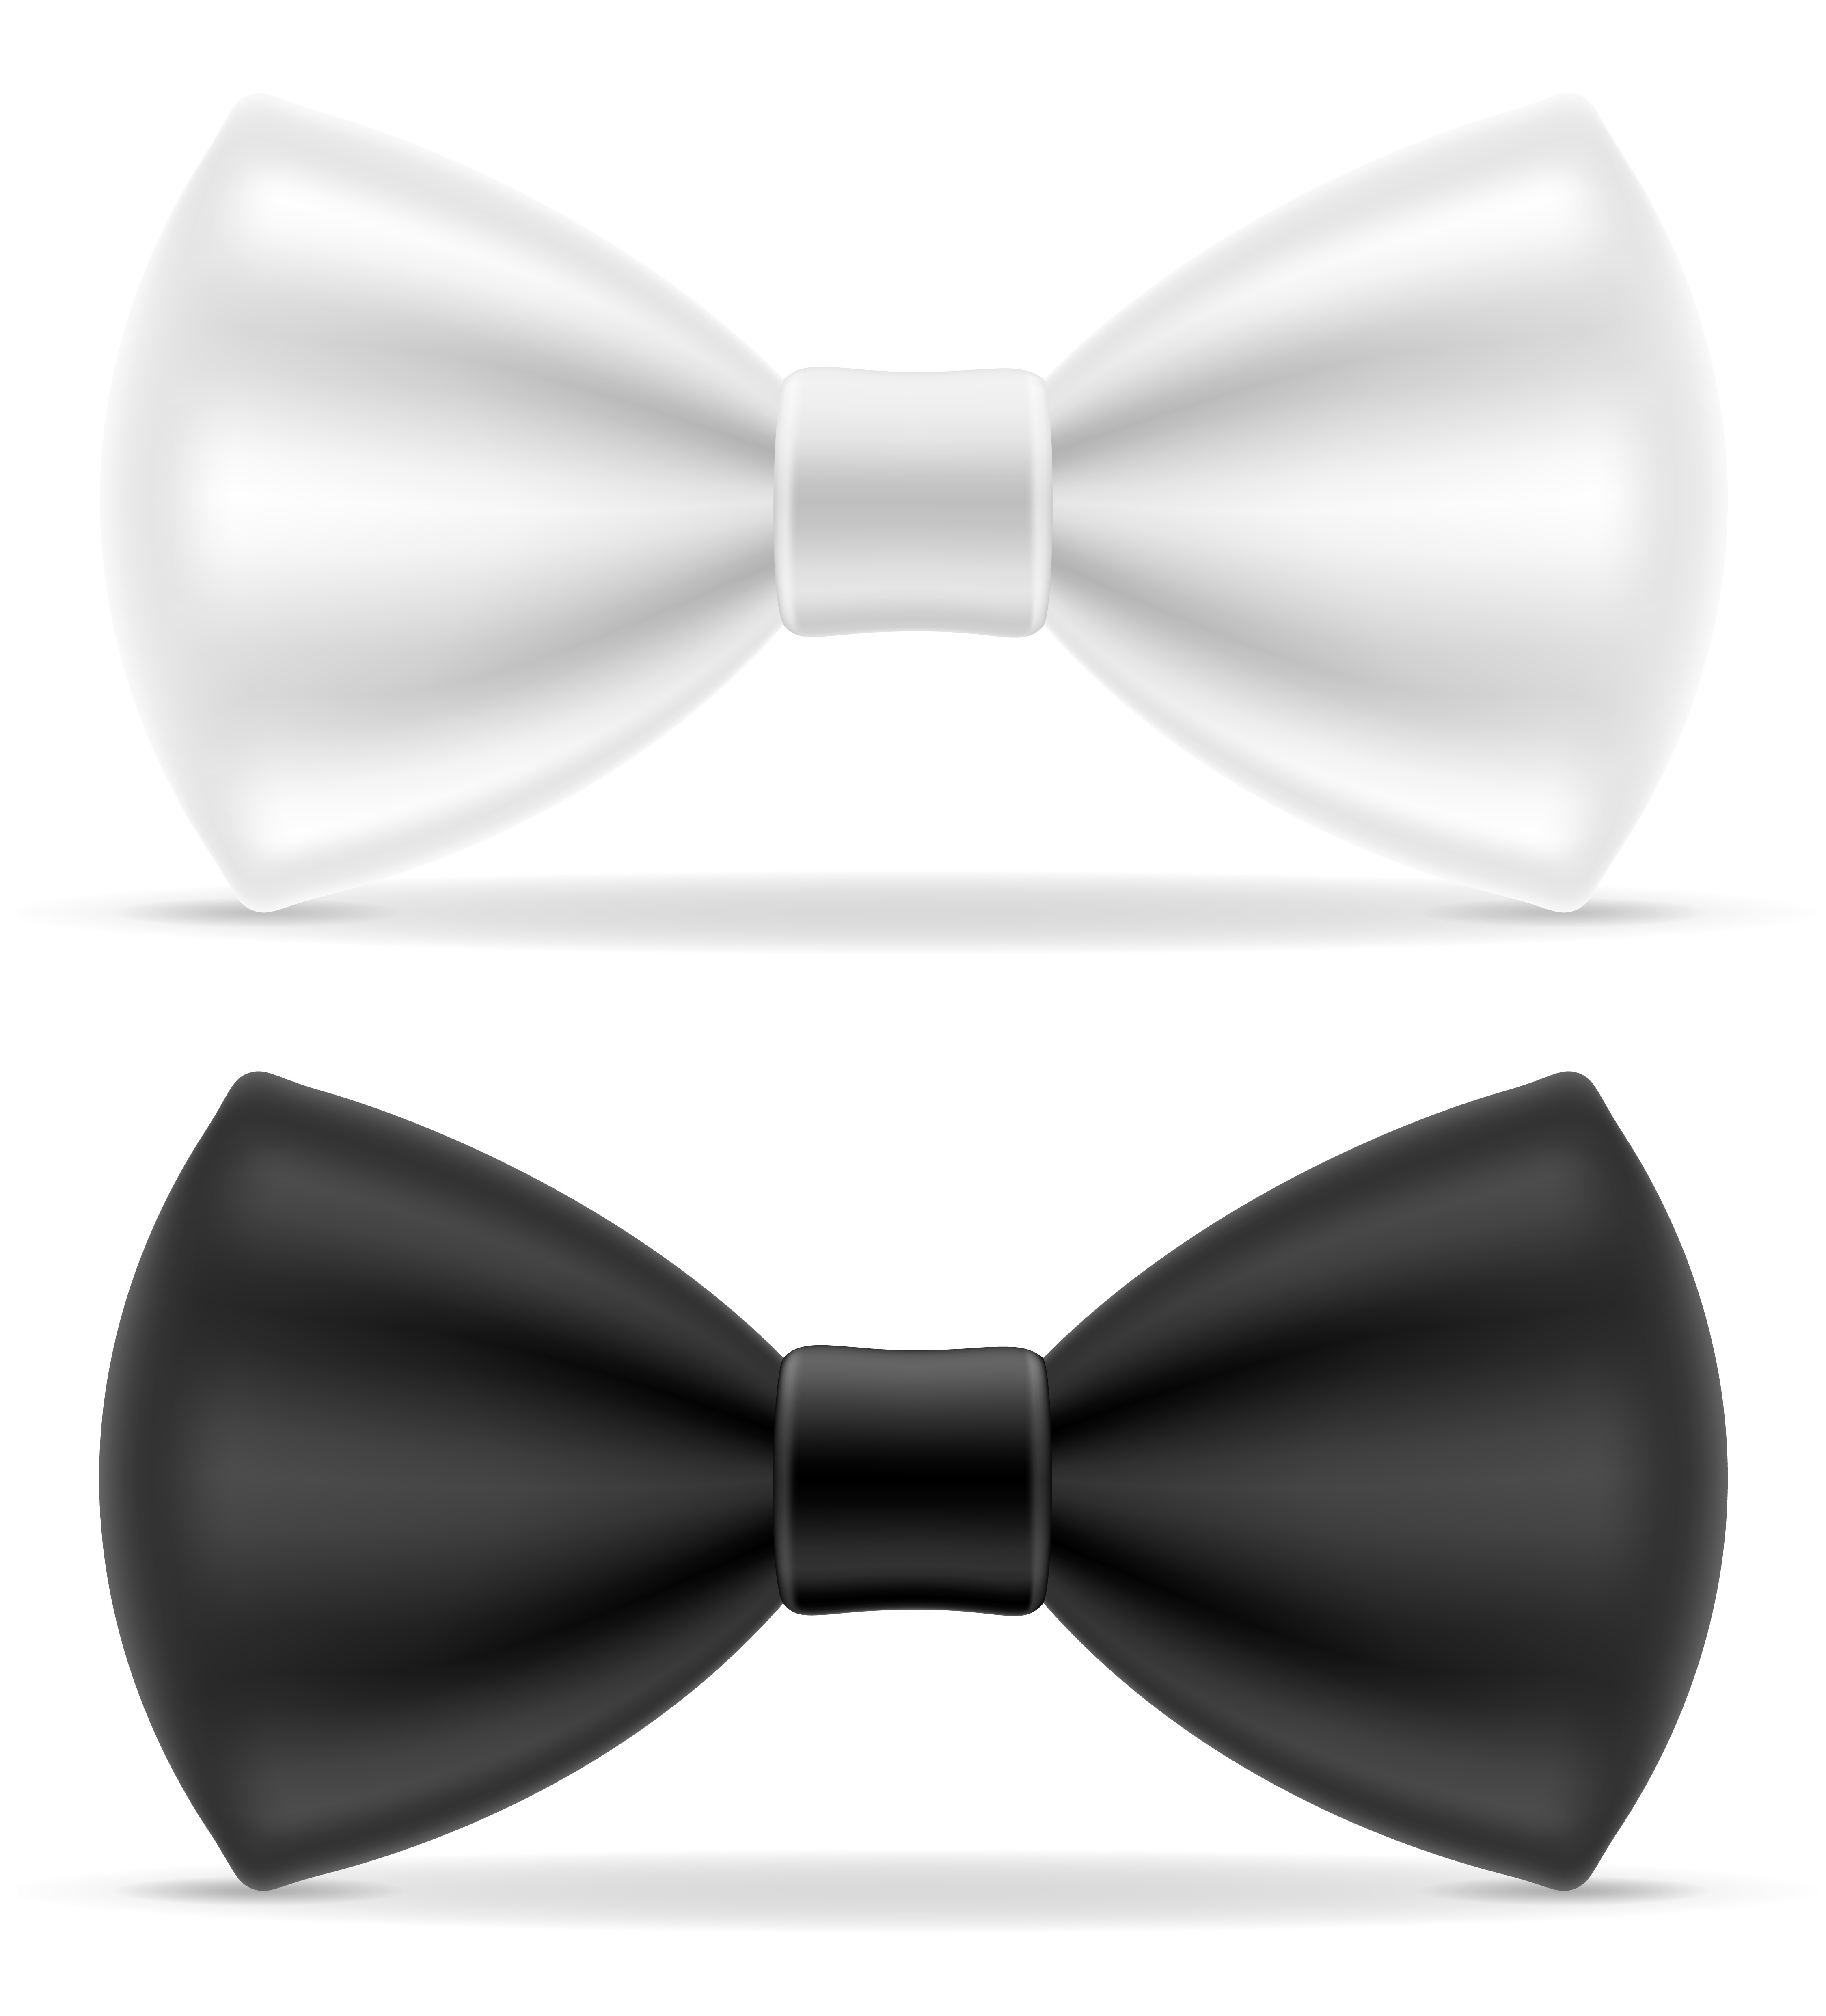 https://static.vecteezy.com/ti/vetor-gratis/p3/509596-gravata-preta-e-branca-para-homens-uma-ilustracao-do-de-terno-vetor.jpg